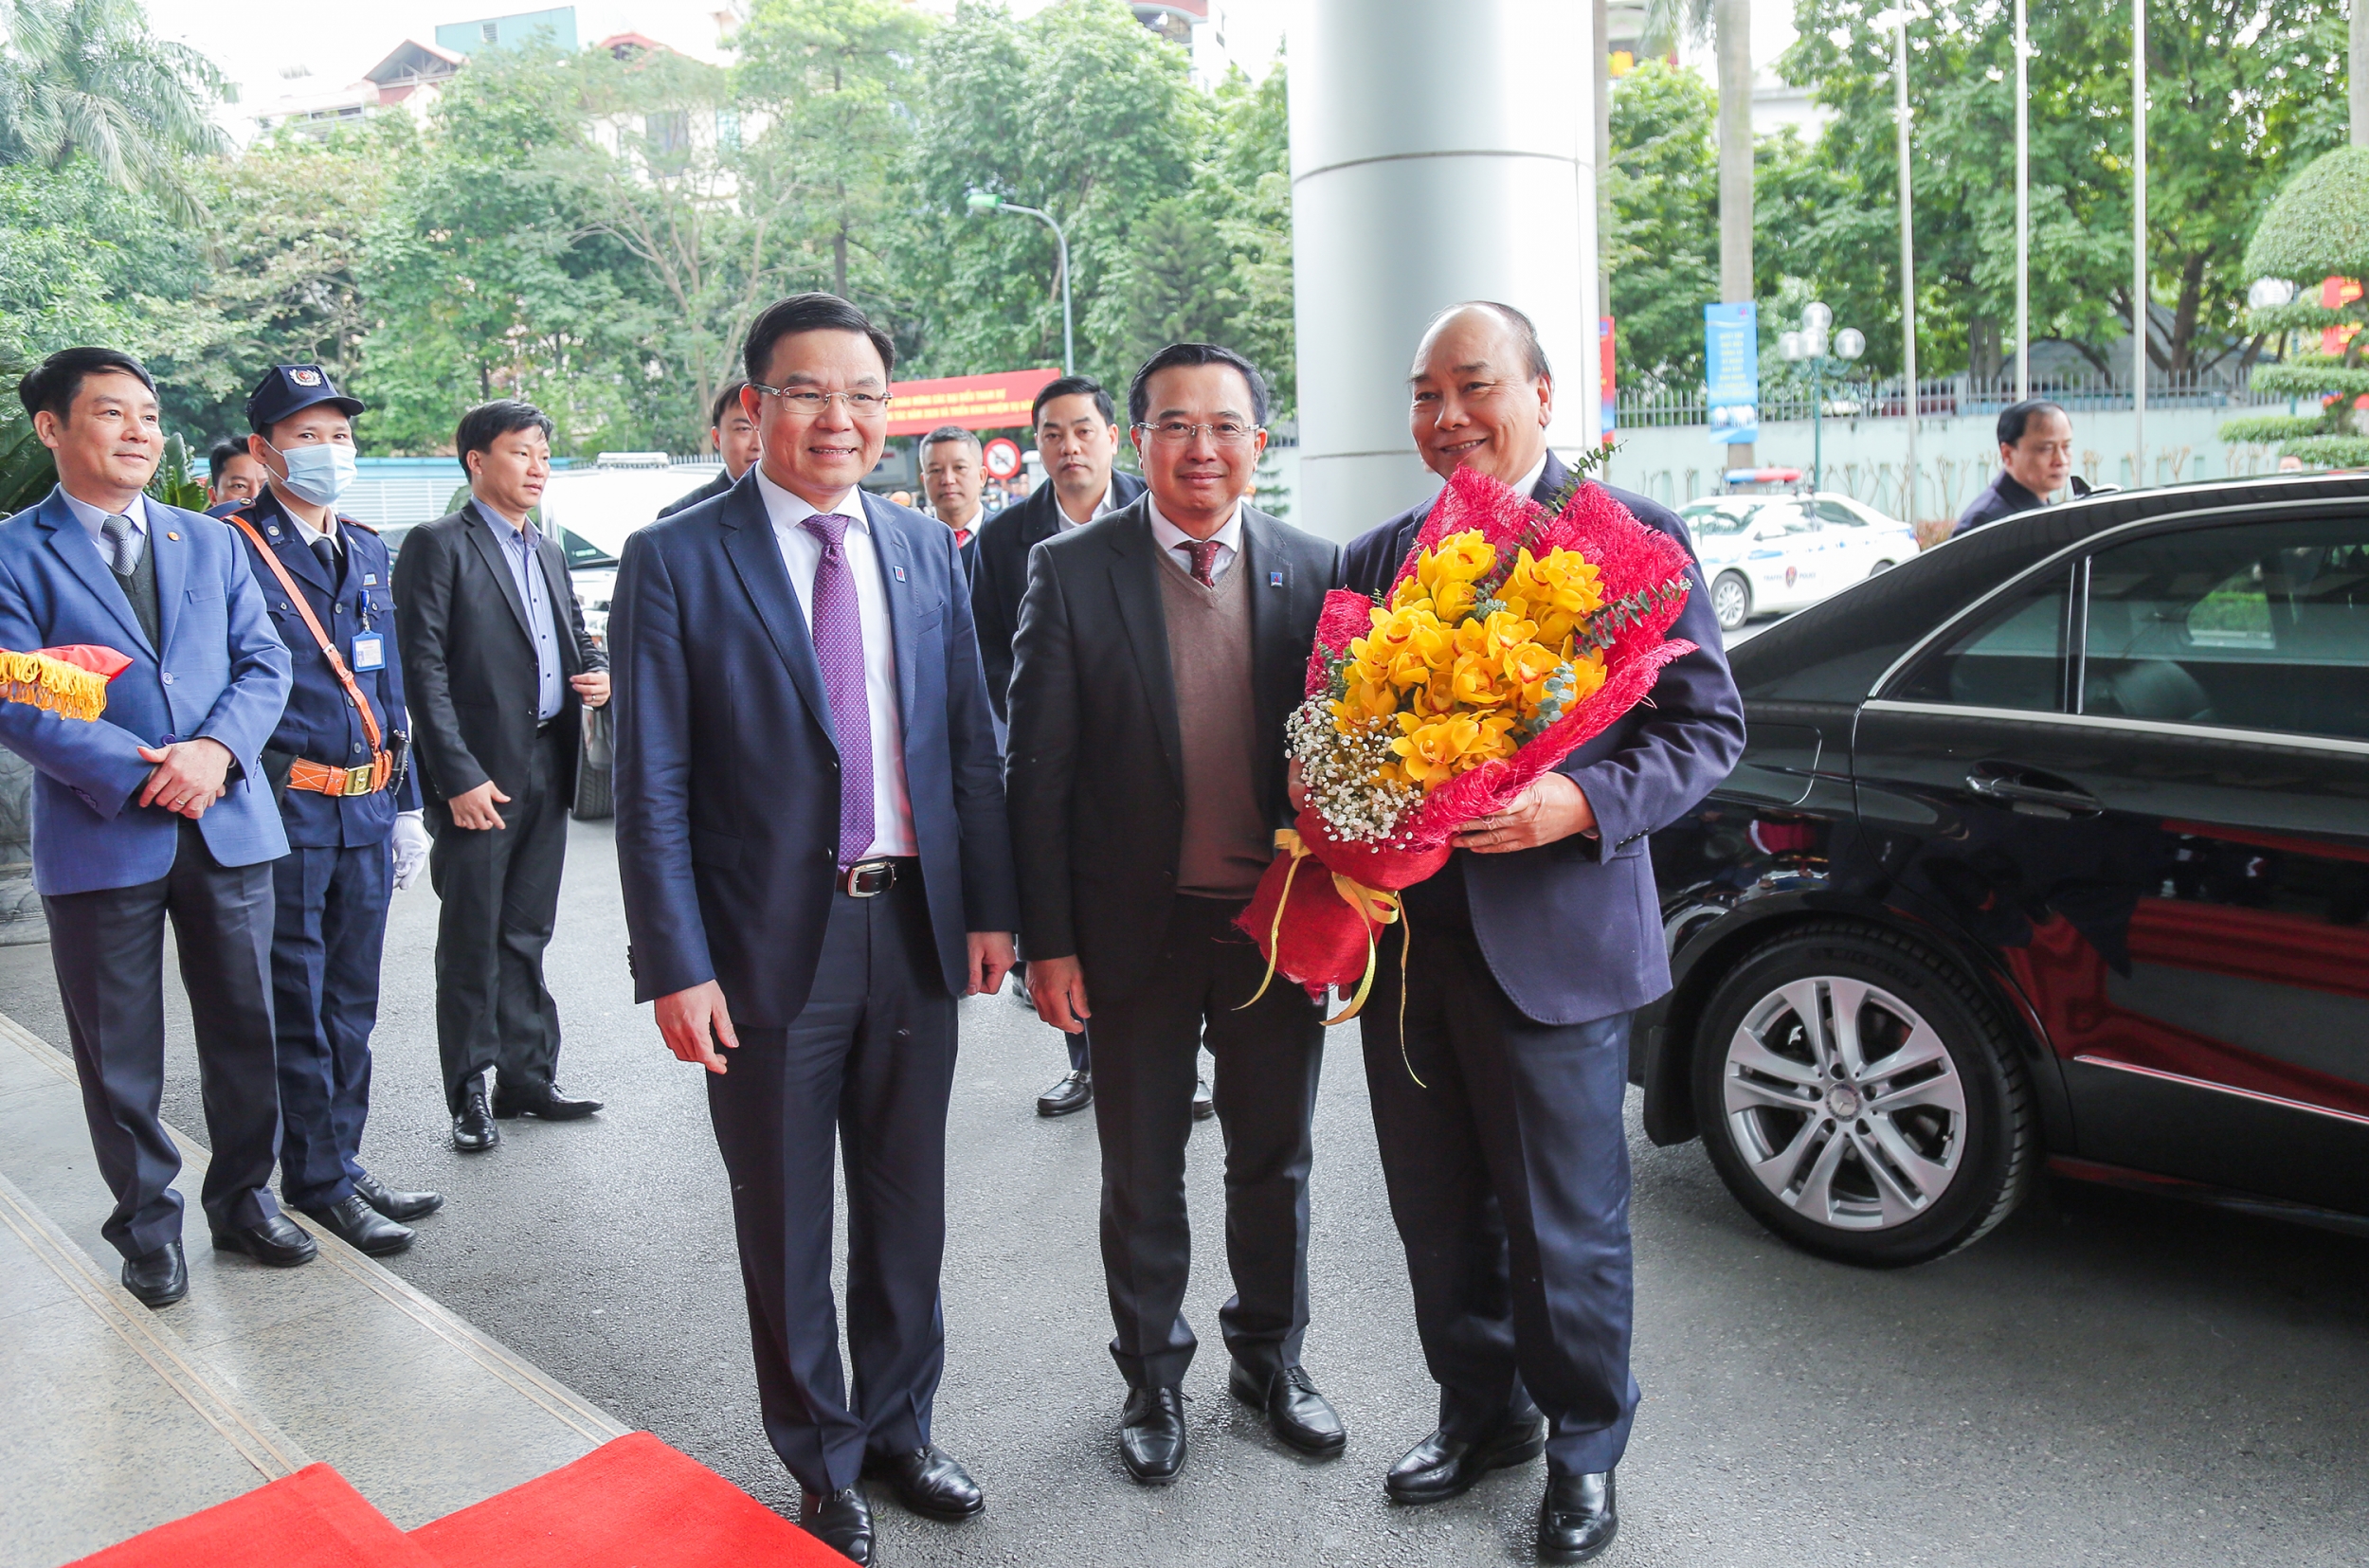 Thủ tướng Chính phủ Nguyễn Xuân Phúc dự và chỉ đạo Hội nghị tổng kết năm 2020, triển khai nhiệm vụ năm 2021 của Petrovietnam